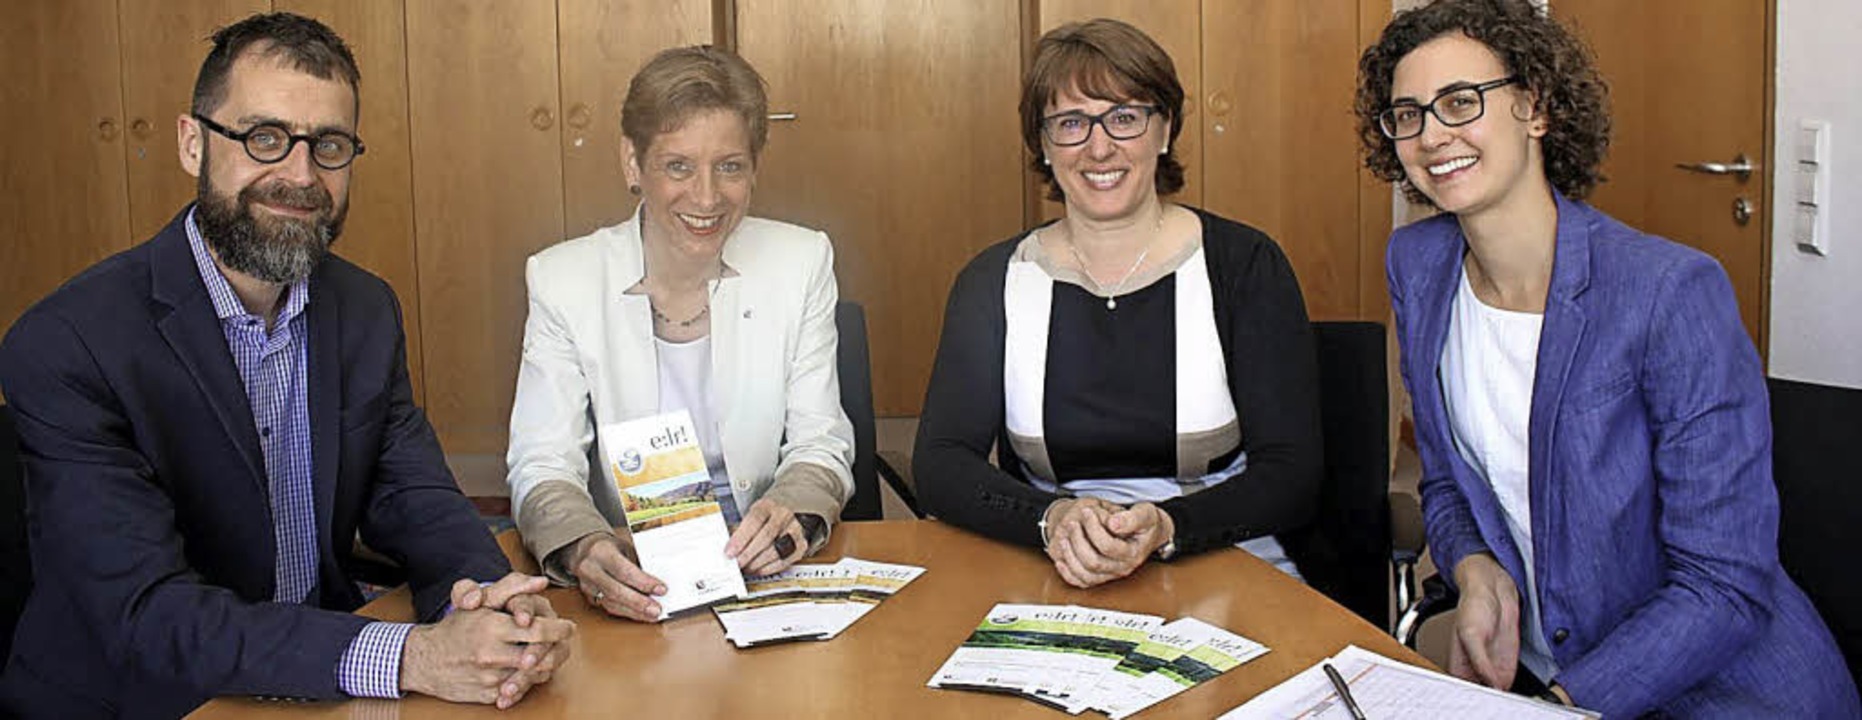 Netzwerker (von links): Erster Landesb... Martina Hinrichs und Laura Berchtold   | Foto: zVg